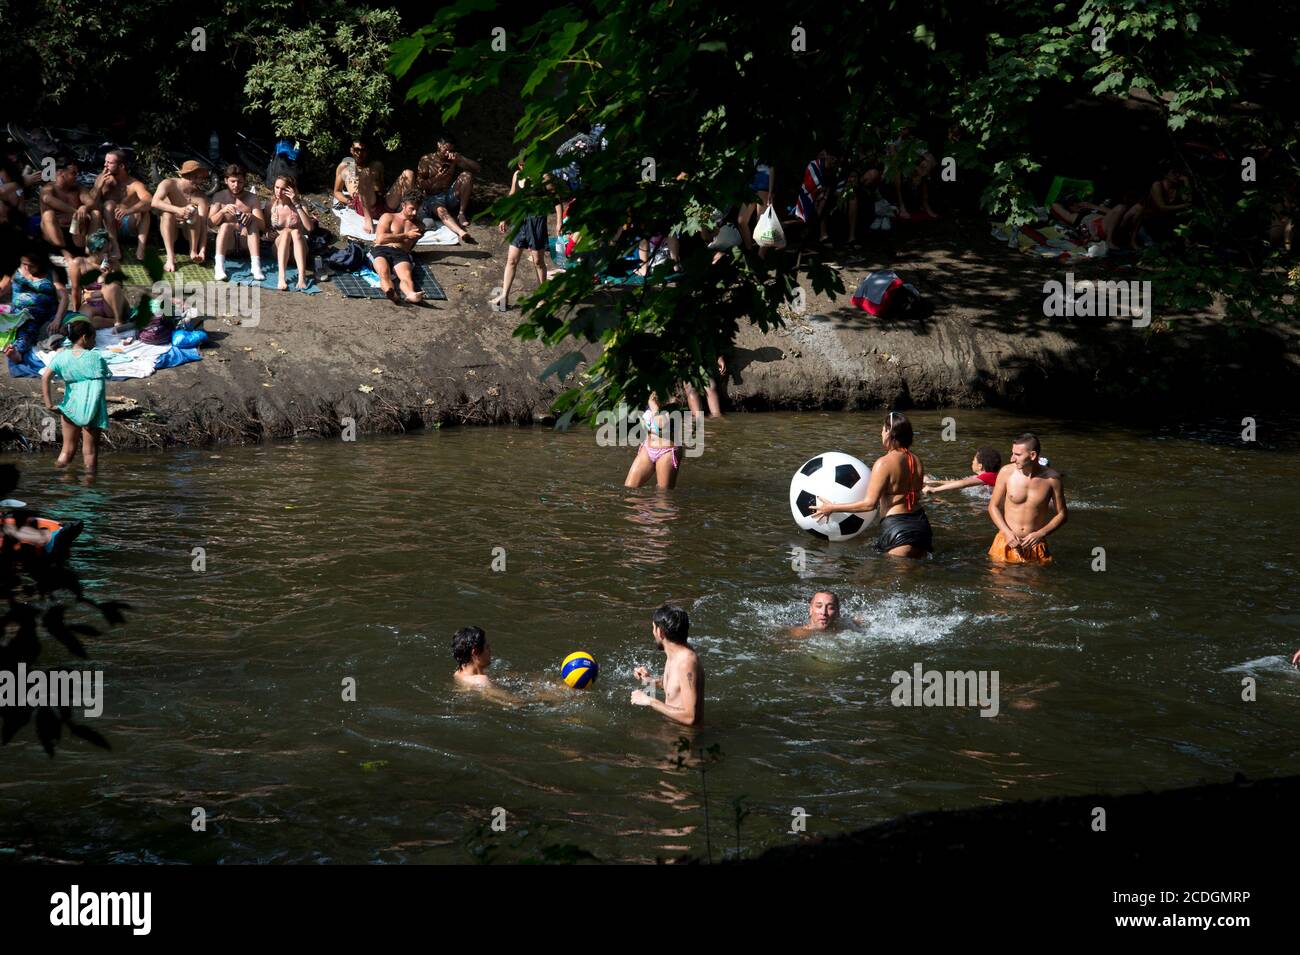 Marais Hackney dans un après-midi chaud d'août. Les jeunes jouent avec une balle dans l'eau Banque D'Images